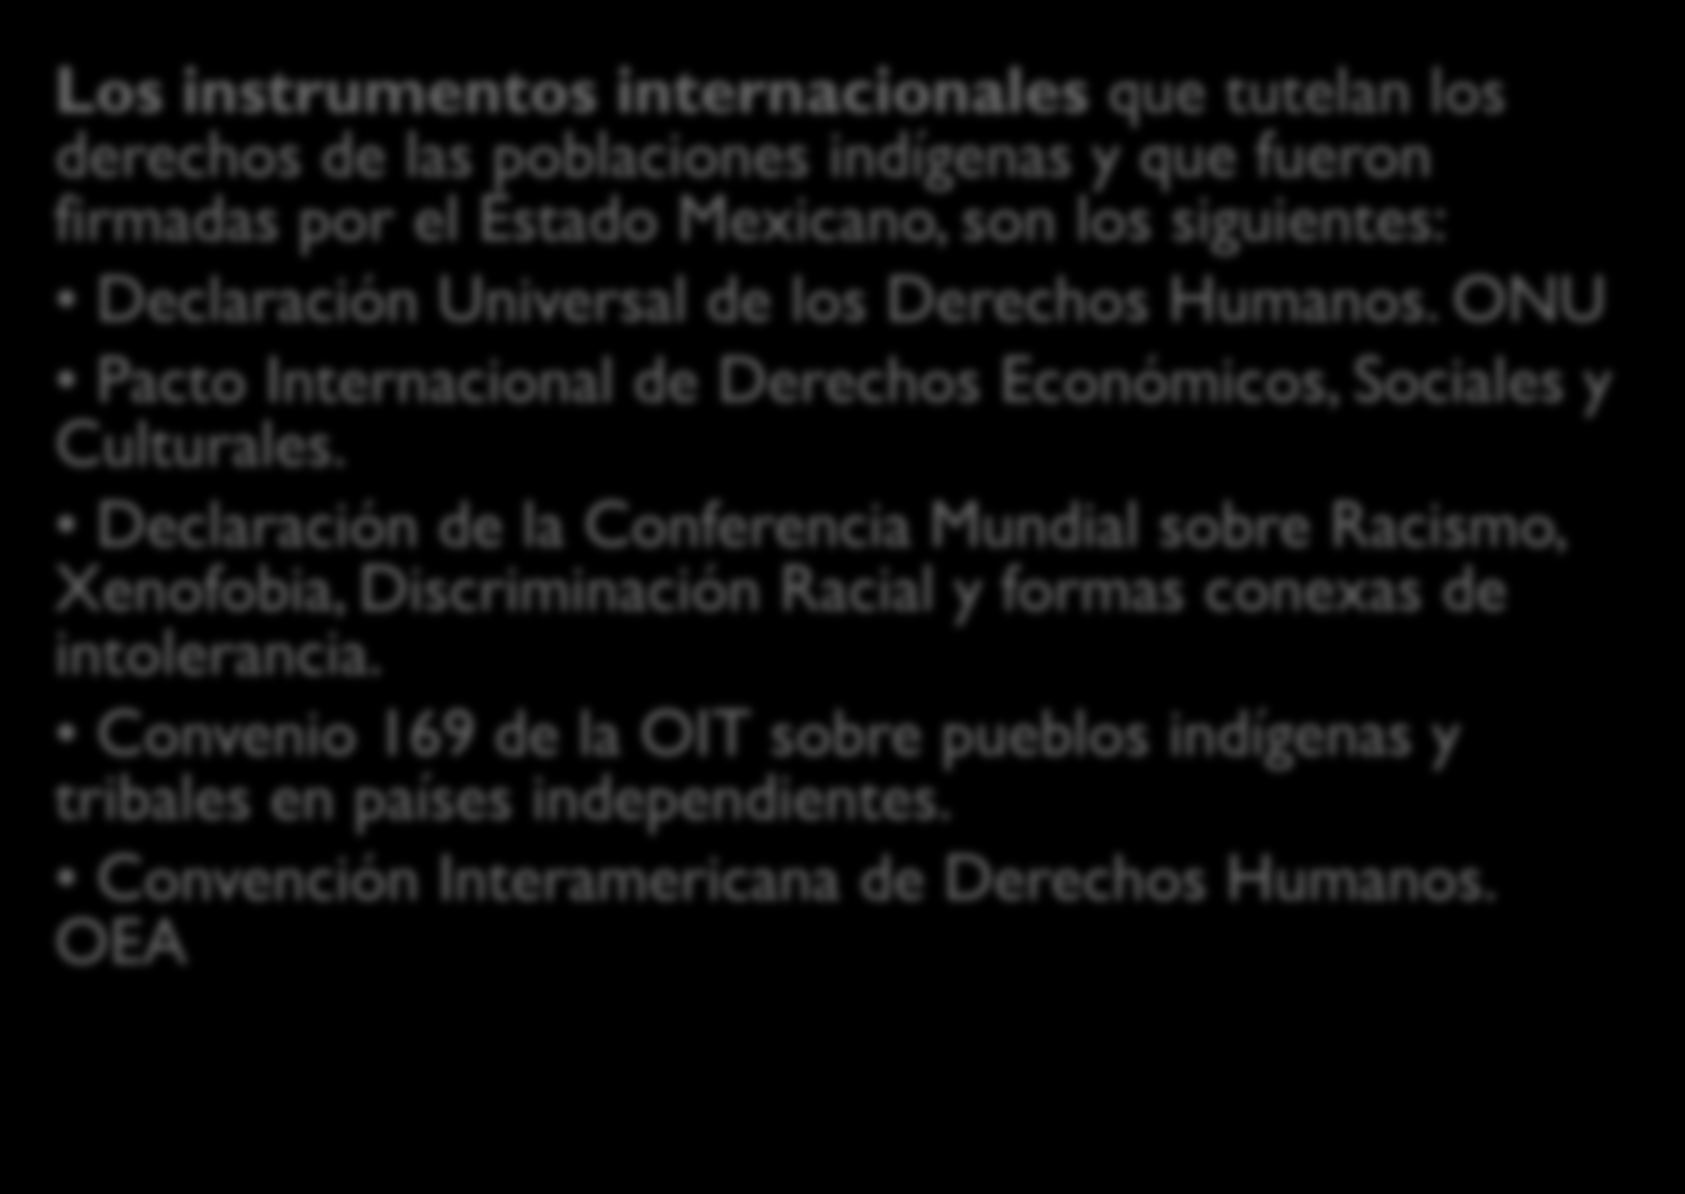 Marco Jurídico internacional de protección a los derechos de la población indígena en la Ciudad México Los instrumentos internacionales que tutelan los derechos de las poblaciones indígenas y que